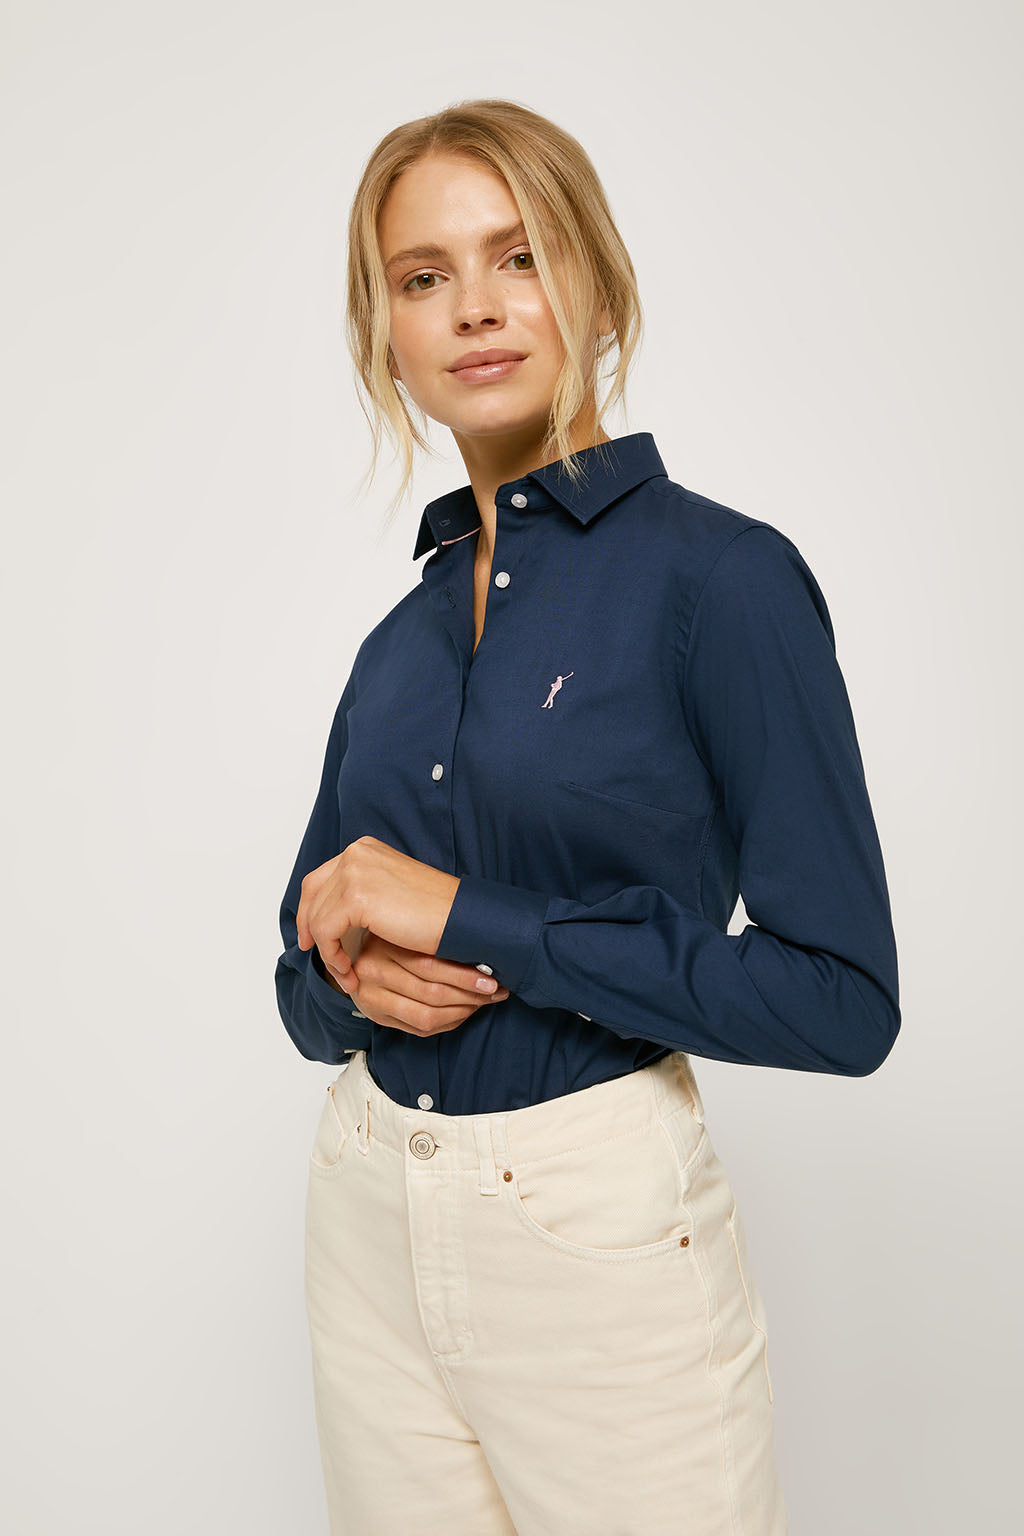 Camisa entallada azul marino popelín con logo bordado – Polo Club